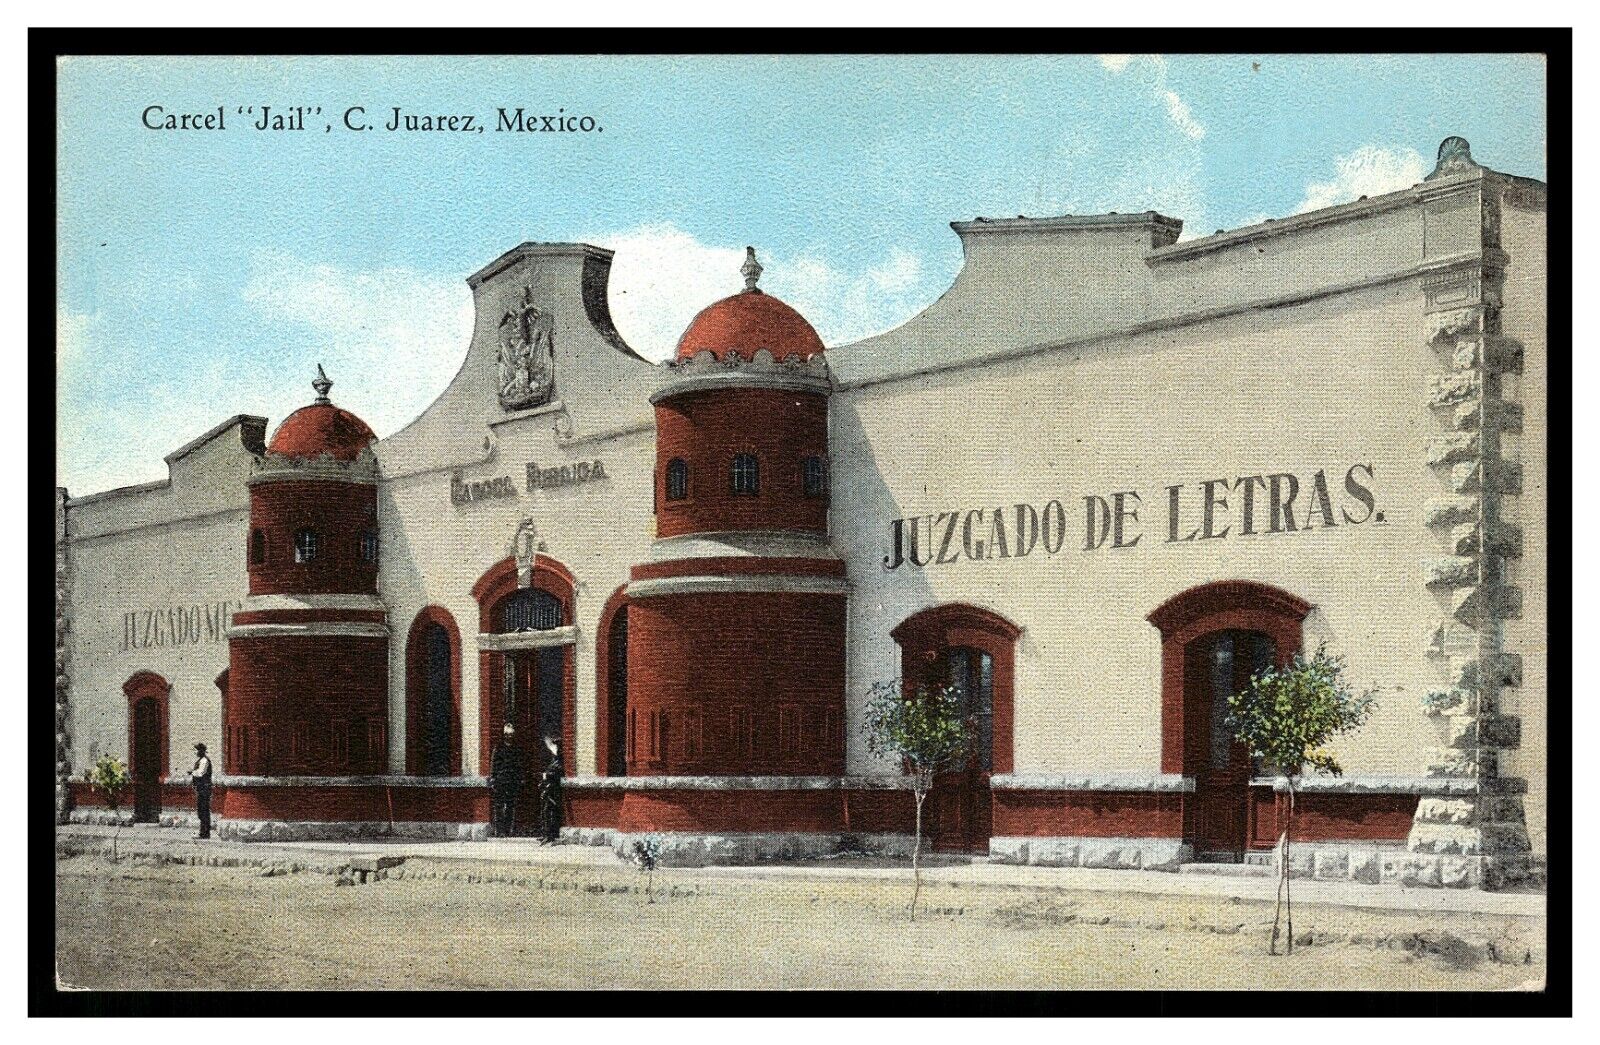 CARCEL JAIL C. JUAREZ MEXICO VINTAGE POSTCARD UNUSED GREAT COLOR IMAGE